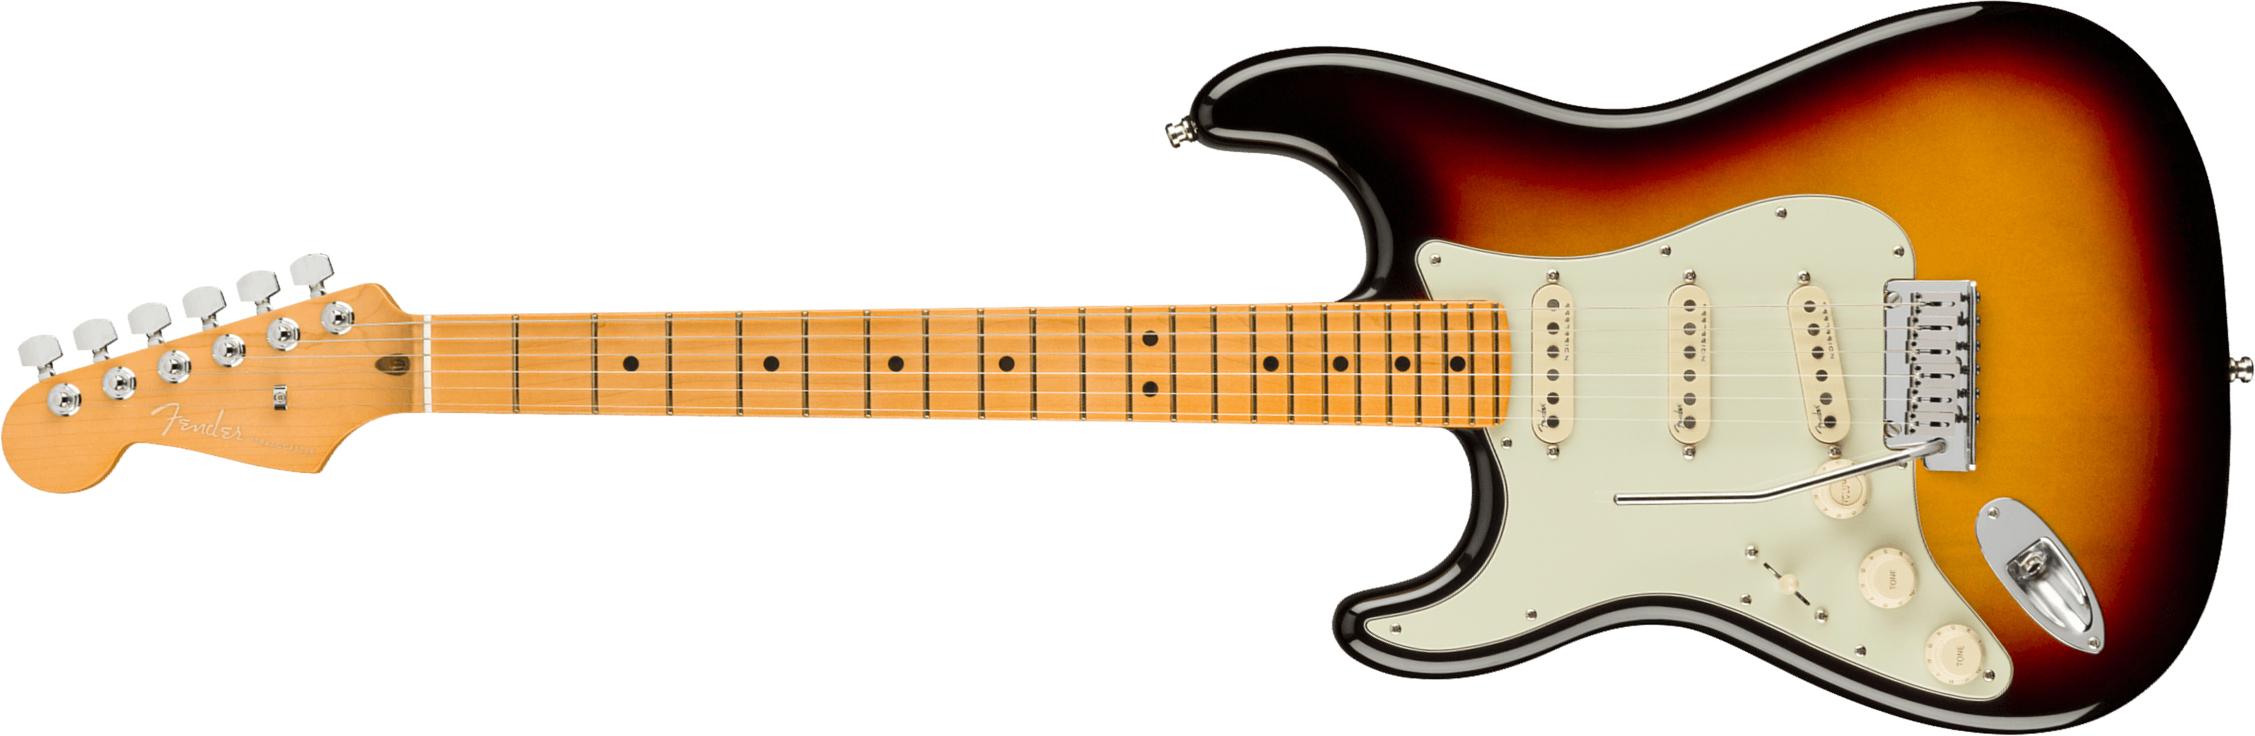 Fender Strat American Ultra Lh Gaucher Usa Mn +etui - Ultraburst - Linkshandige elektrische gitaar - Main picture